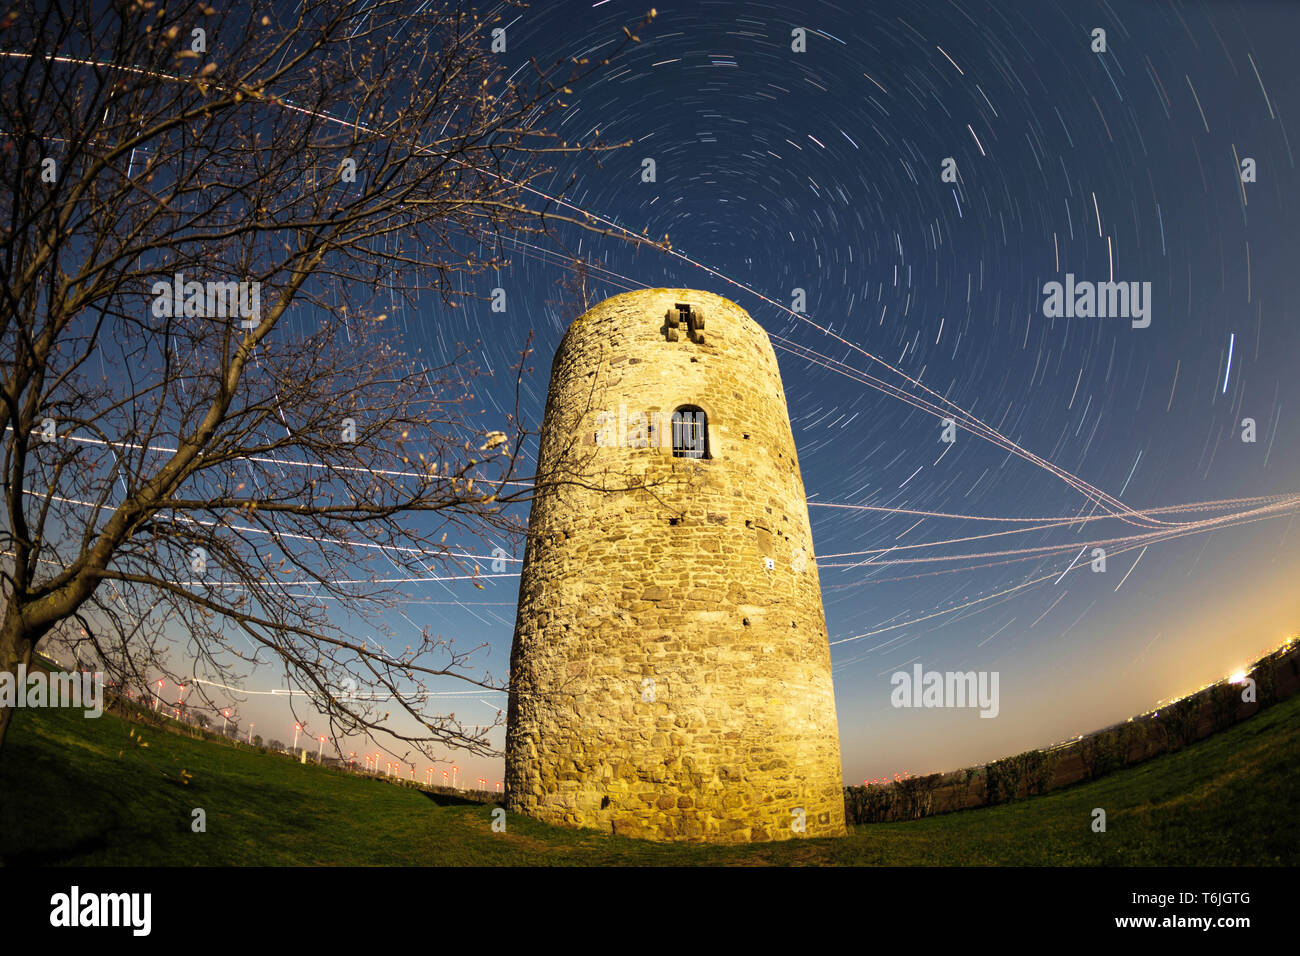 Alten Wachturm in der Nacht vom Vollmond beleuchtet, mit rotierenden Sky (Star Wanderwege) und ebene Wanderwege (Foto mit Fish Eye Objektiv aufgenommen) Stockfoto